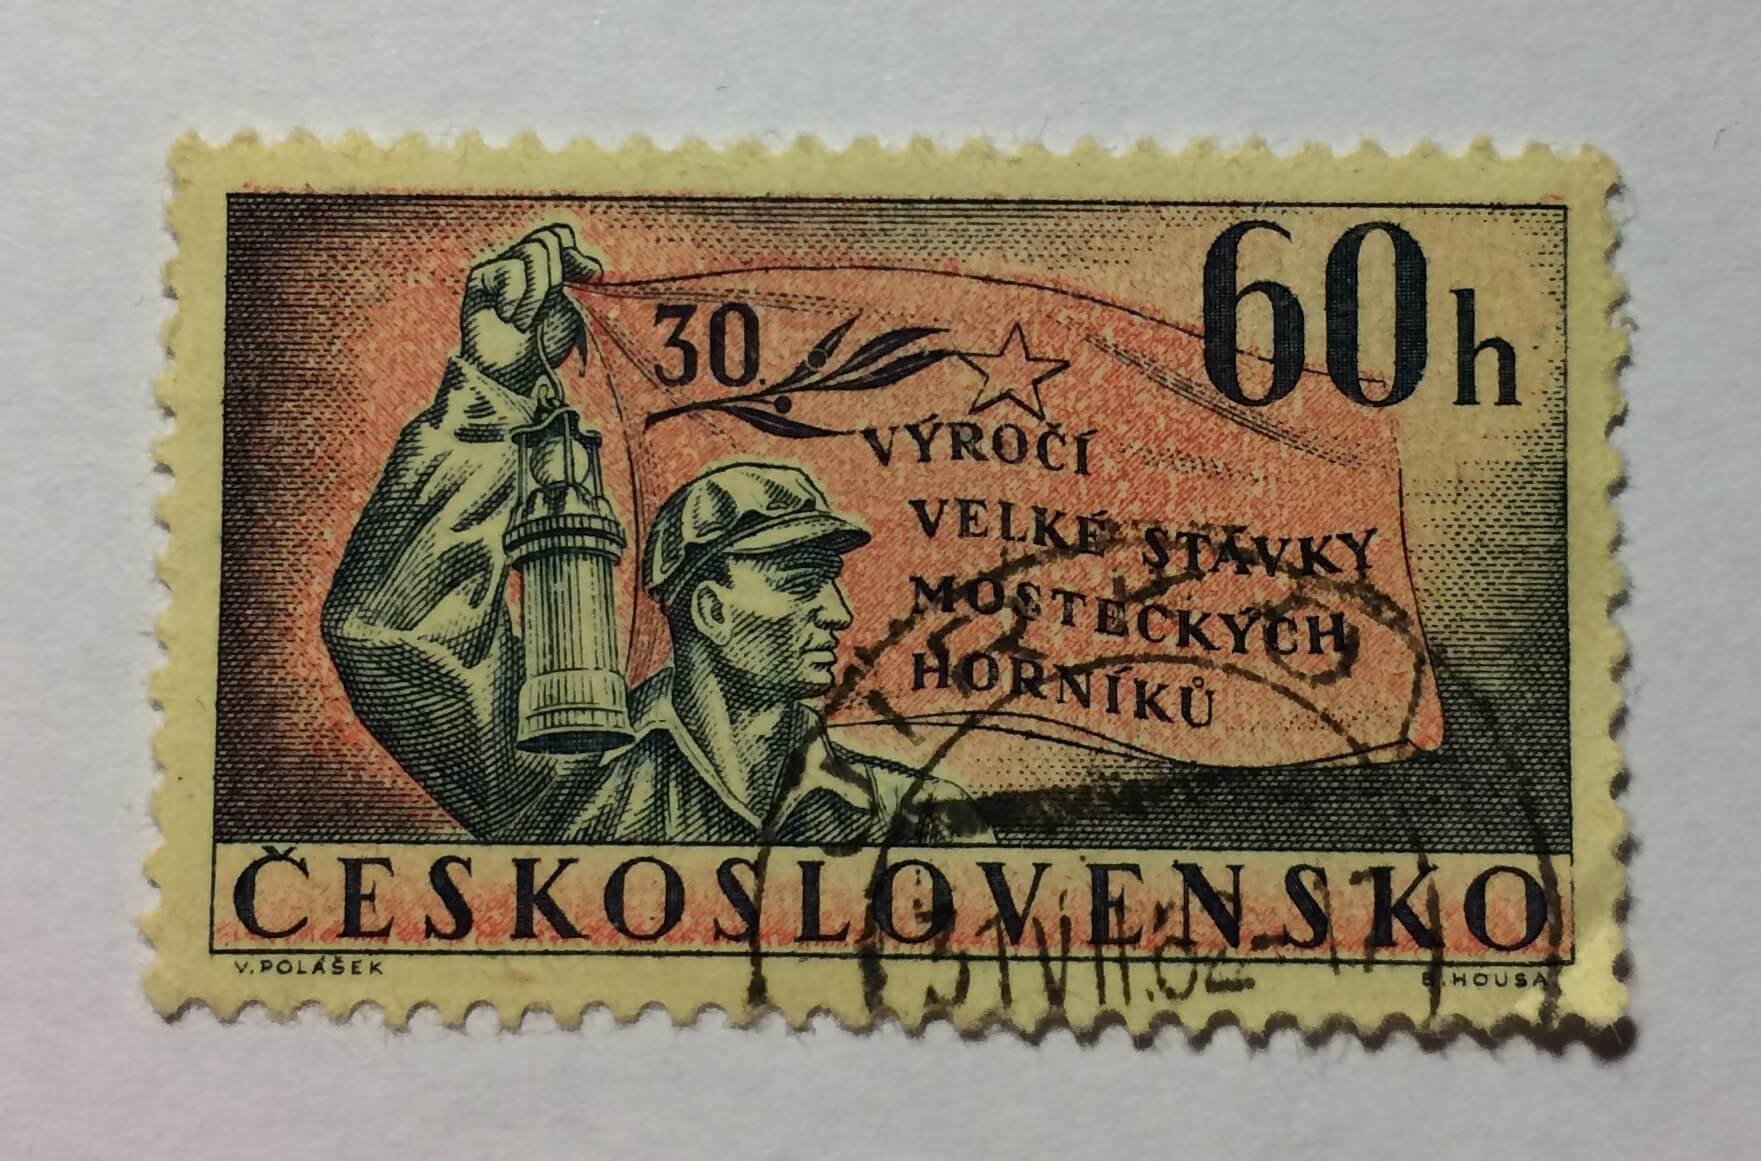 Купить в чехословакии. Марки Чехословакии 1973. Почтовые марки Чехословакии мотоциклы. Марки Чехословакии 1968 год. Почтовая марка Чехословакии 80 h.